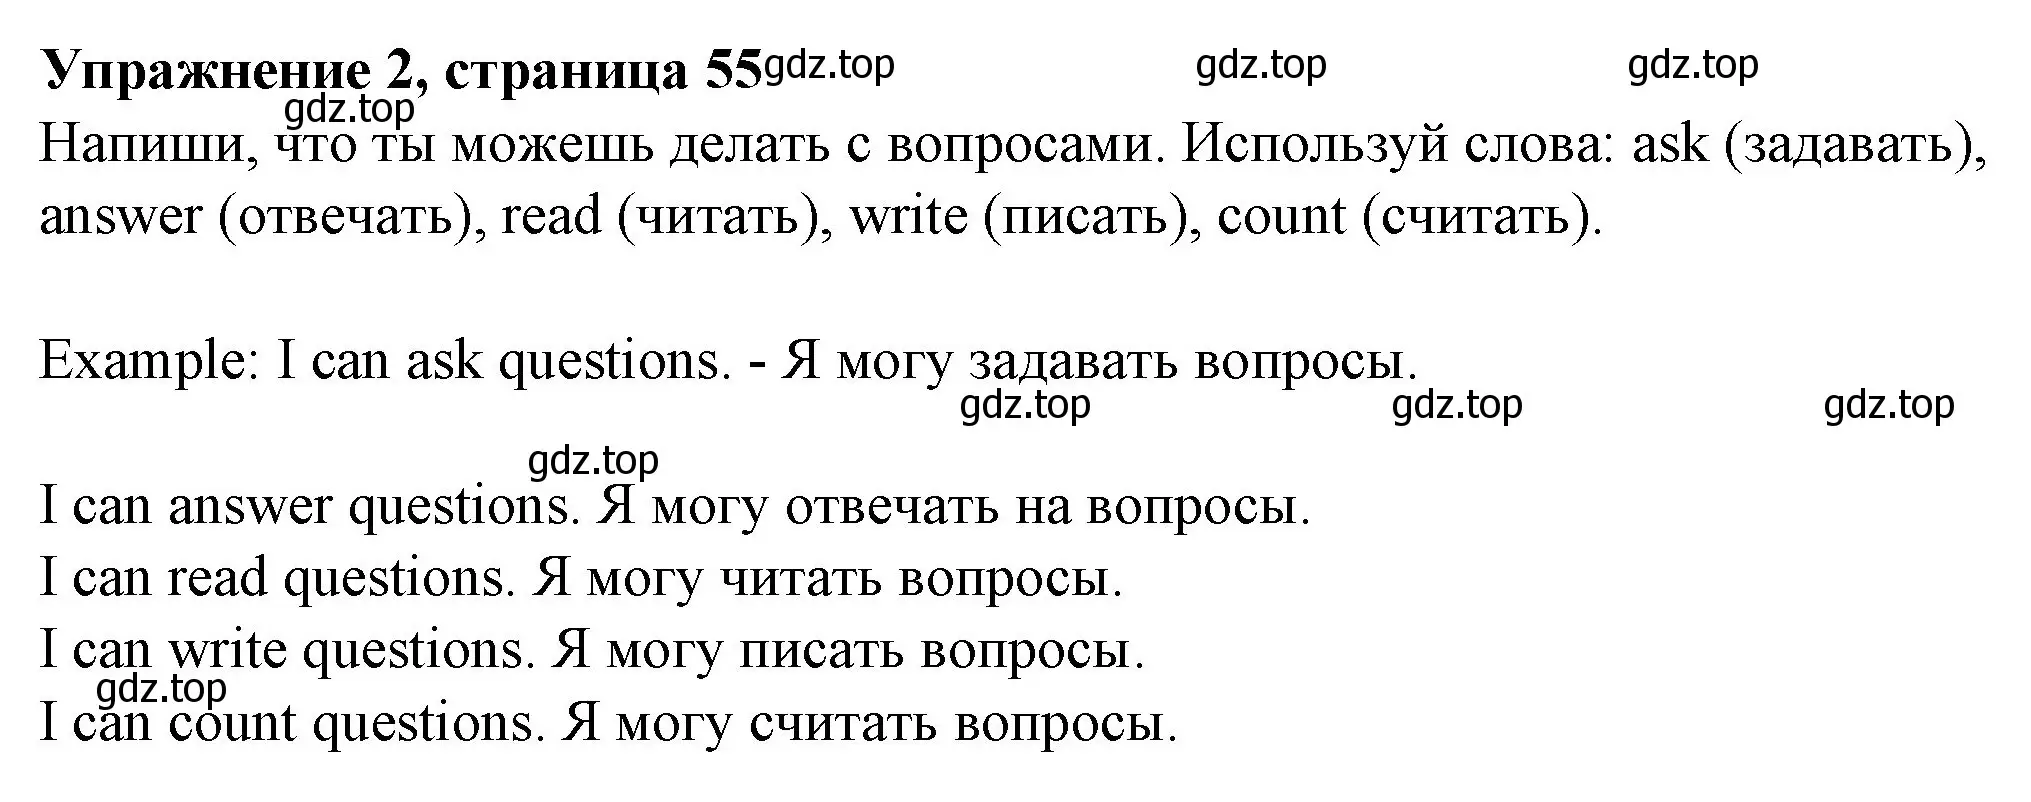 Решение номер 2 (страница 55) гдз по английскому языку 3 класс Биболетова, Денисенко, рабочая тетрадь